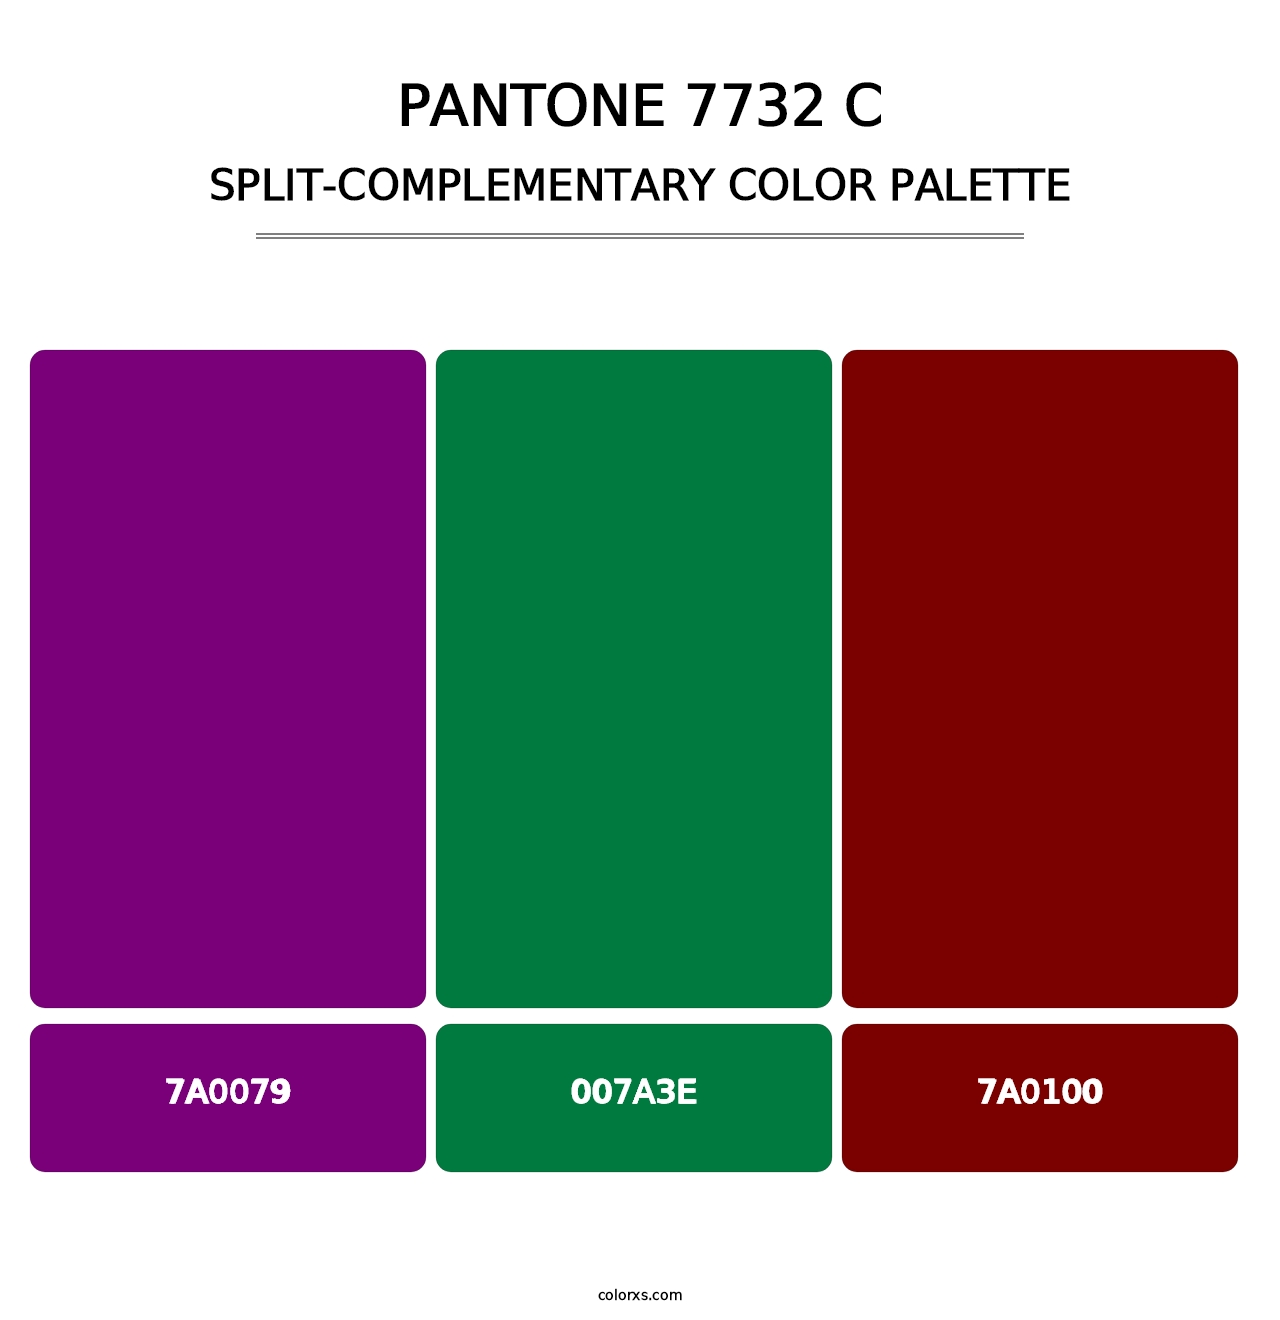 PANTONE 7732 C - Split-Complementary Color Palette